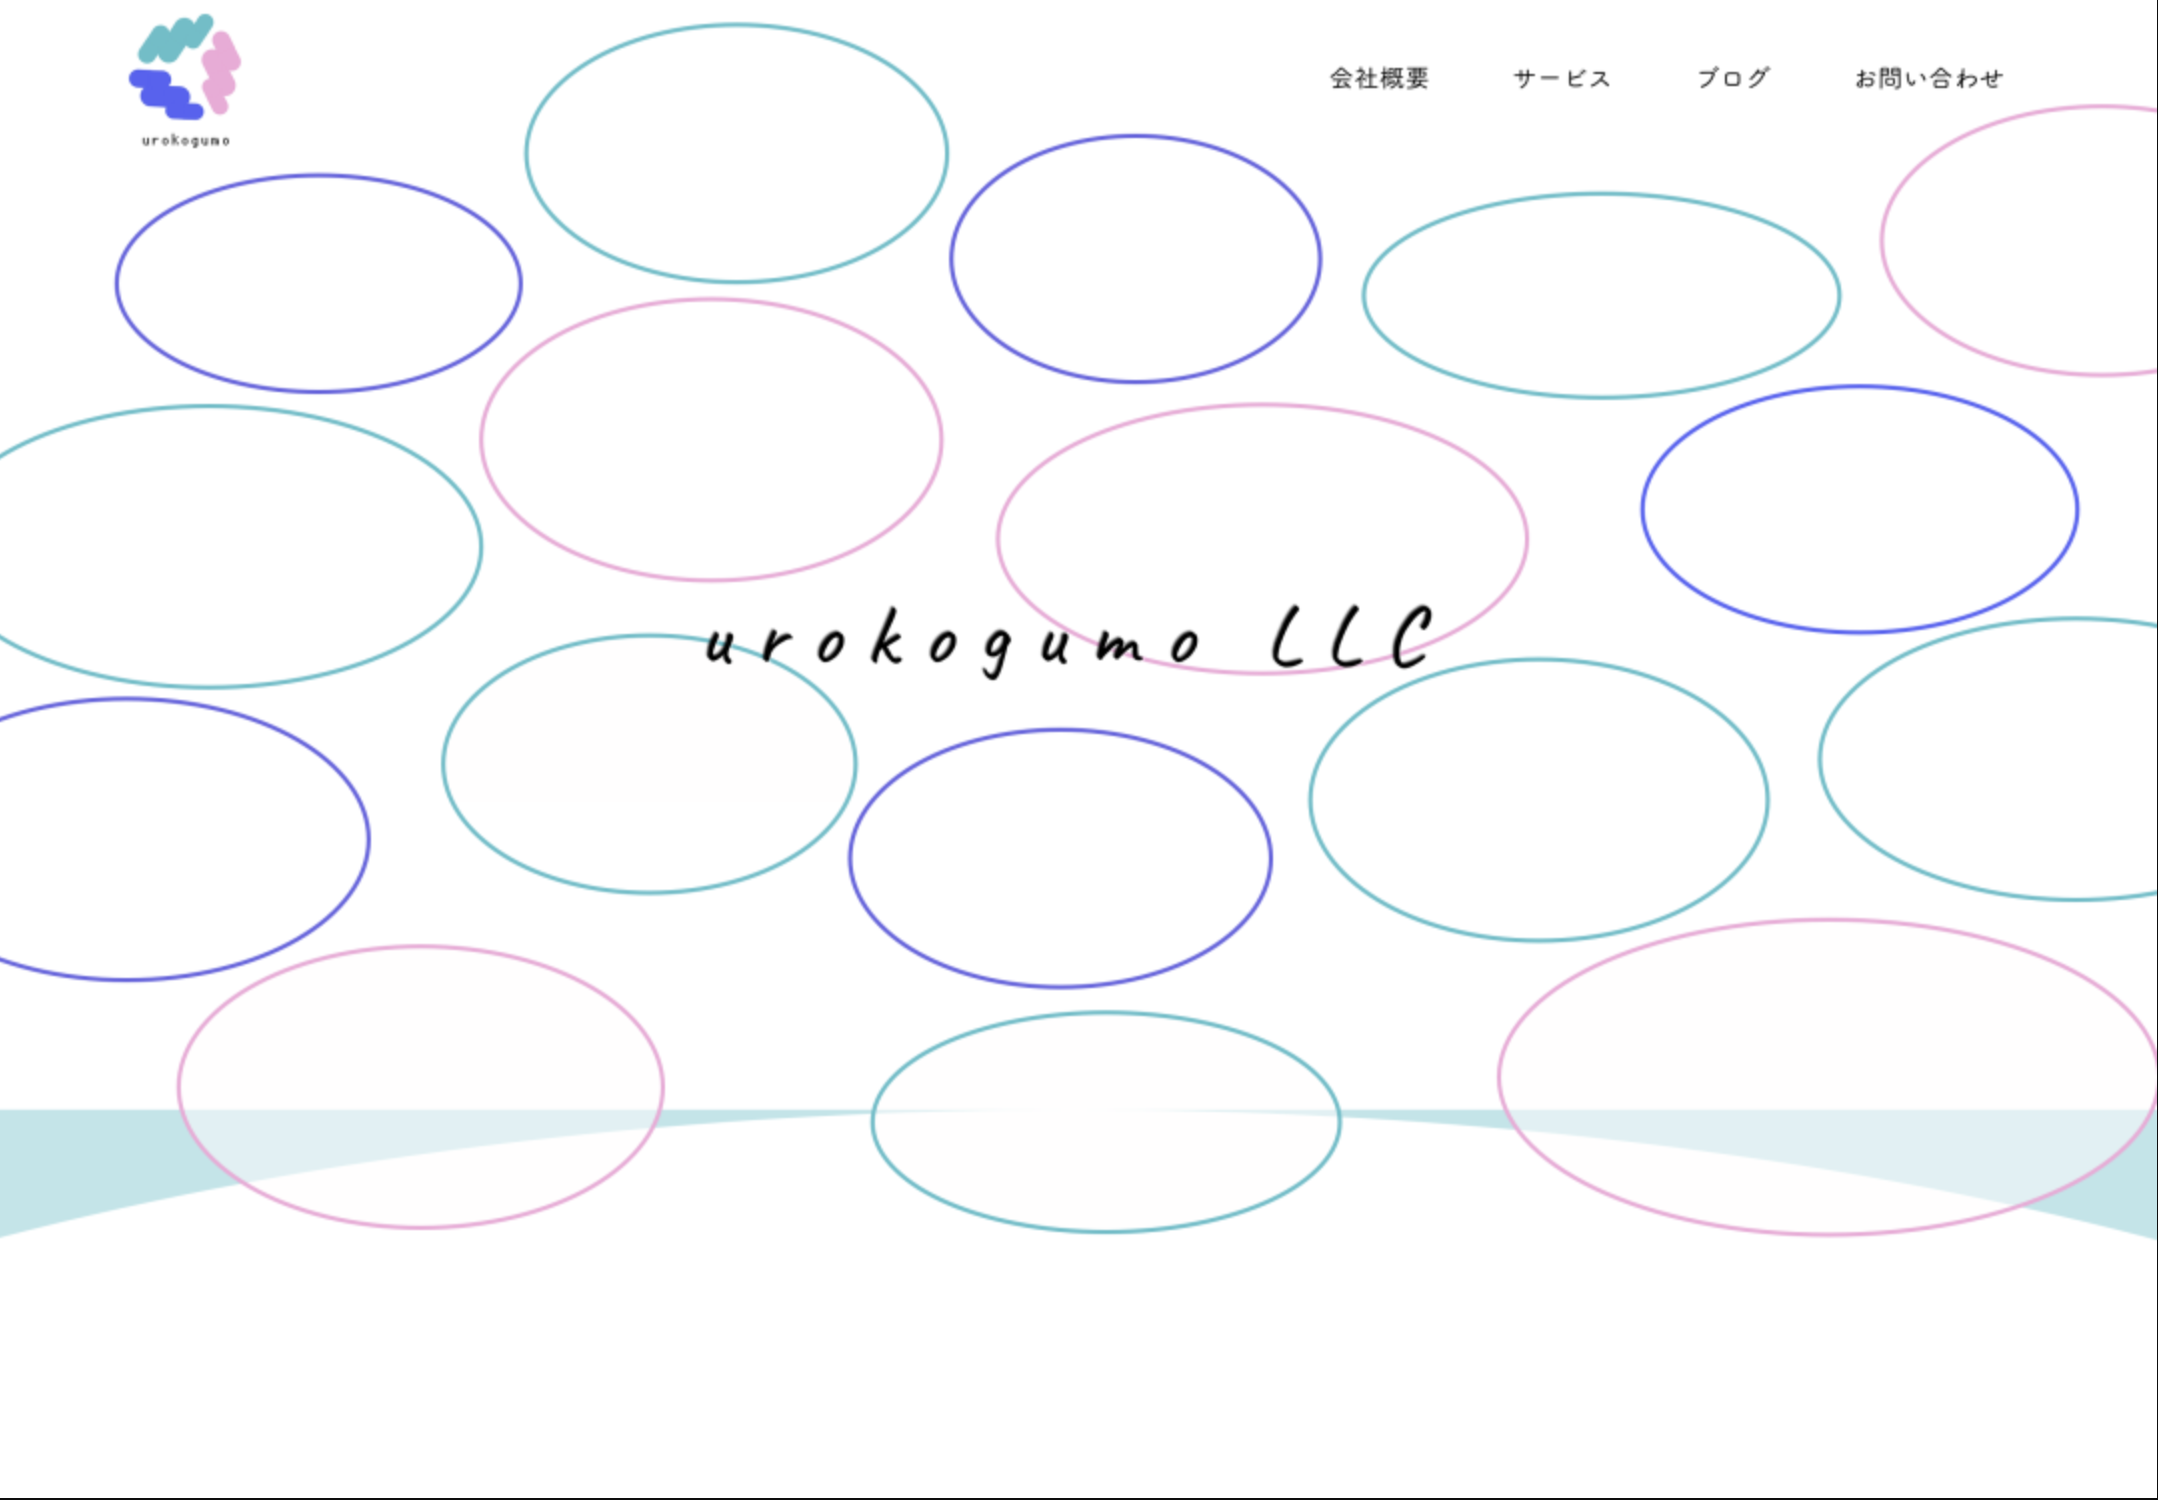 合同会社urokogumoの合同会社urokogumo:デザイン制作サービス